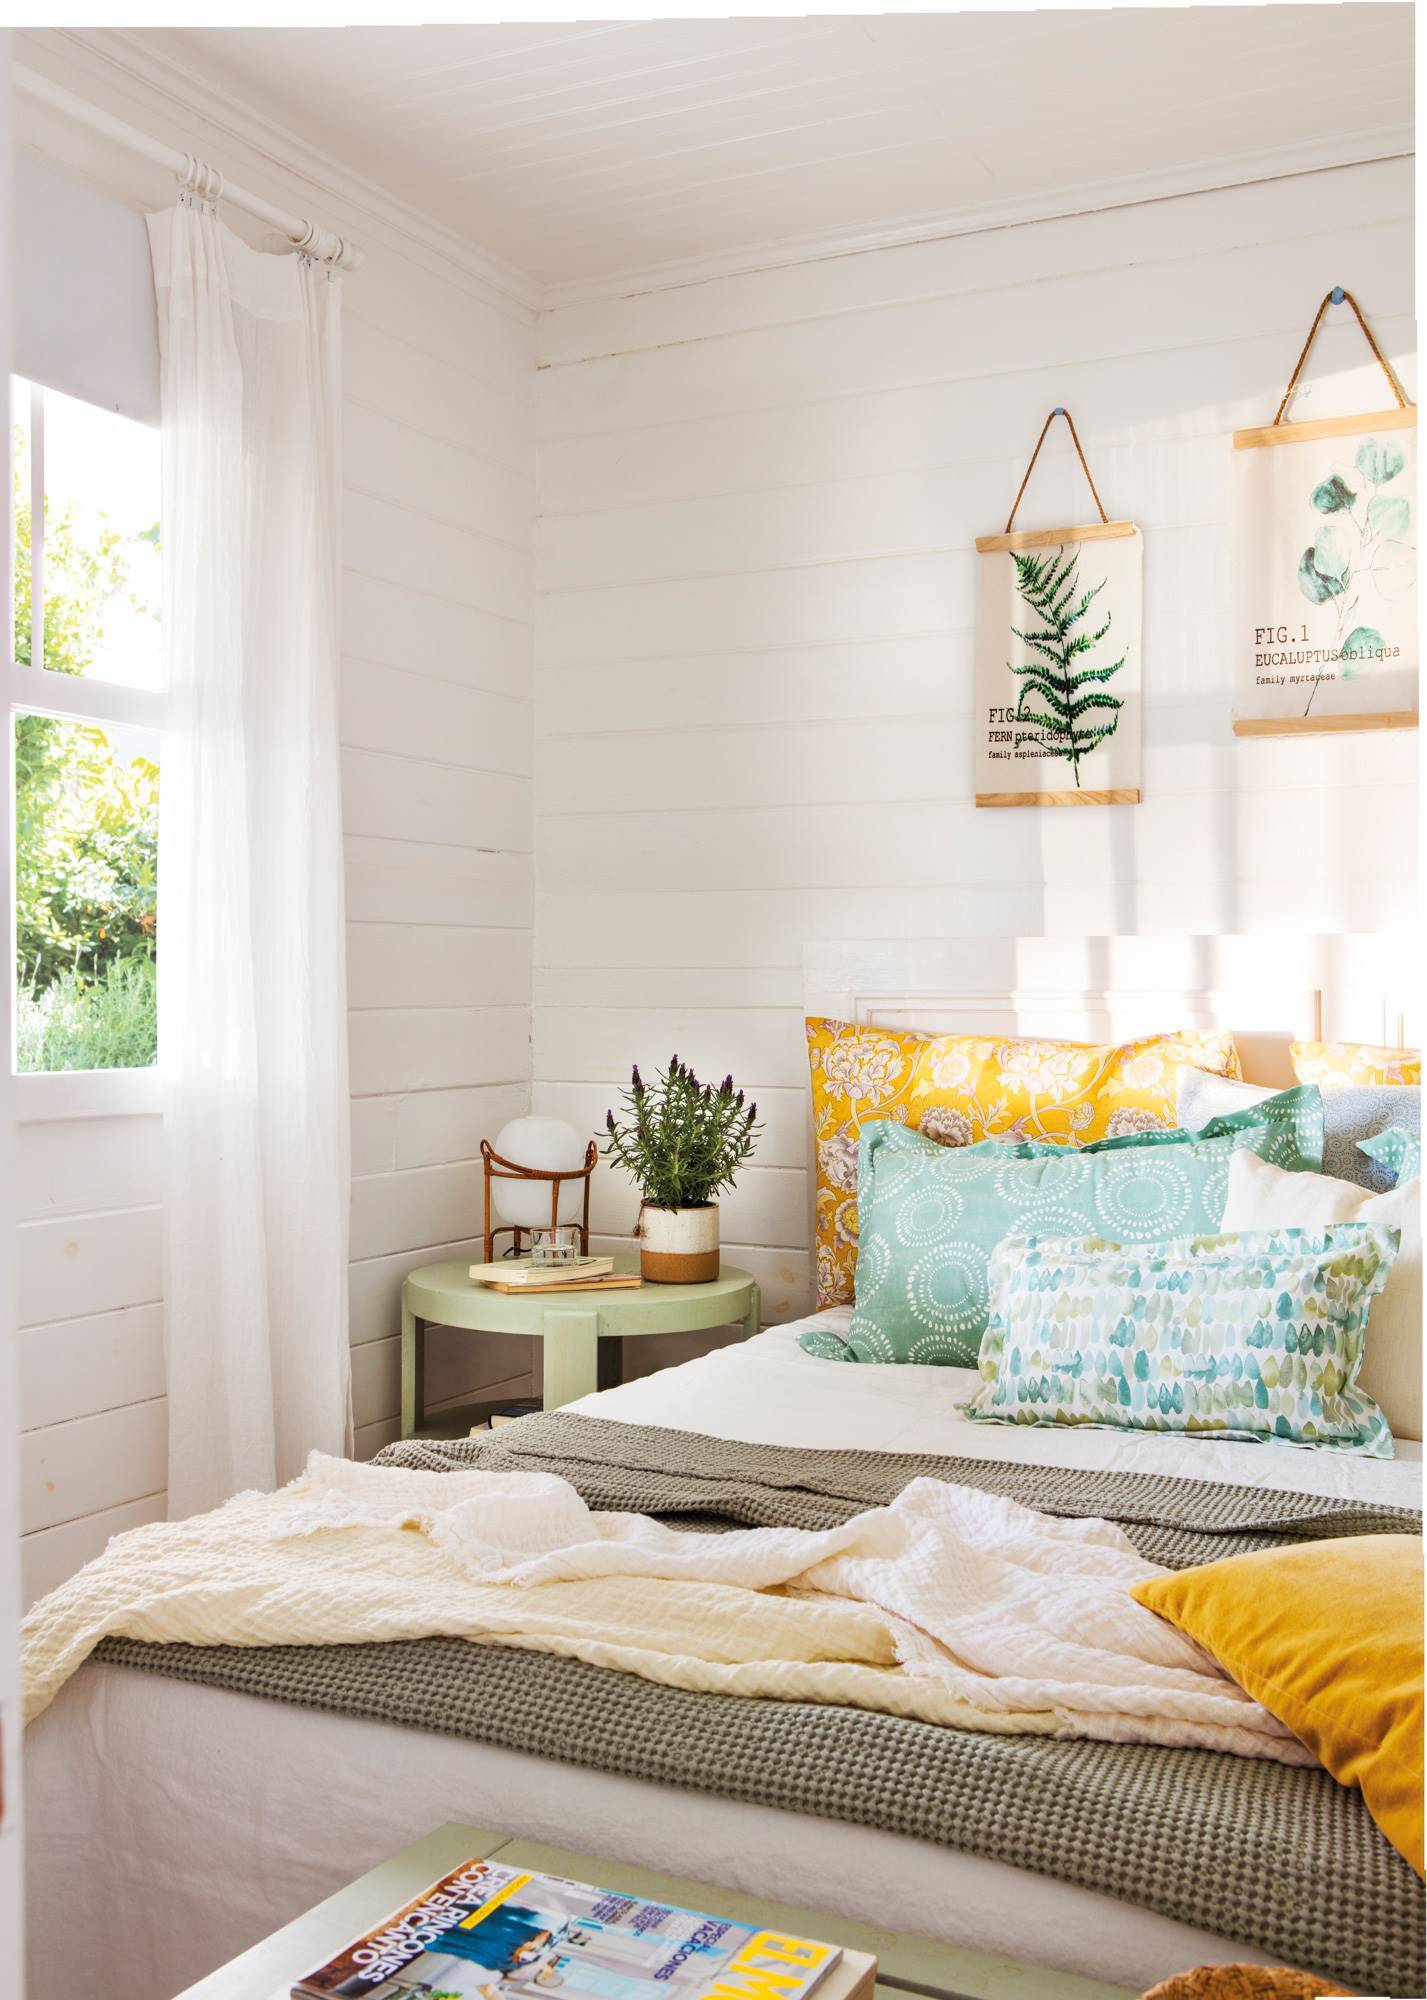 Dormitorio blanco fresco con ropa de cama amarilla y verde_00485094